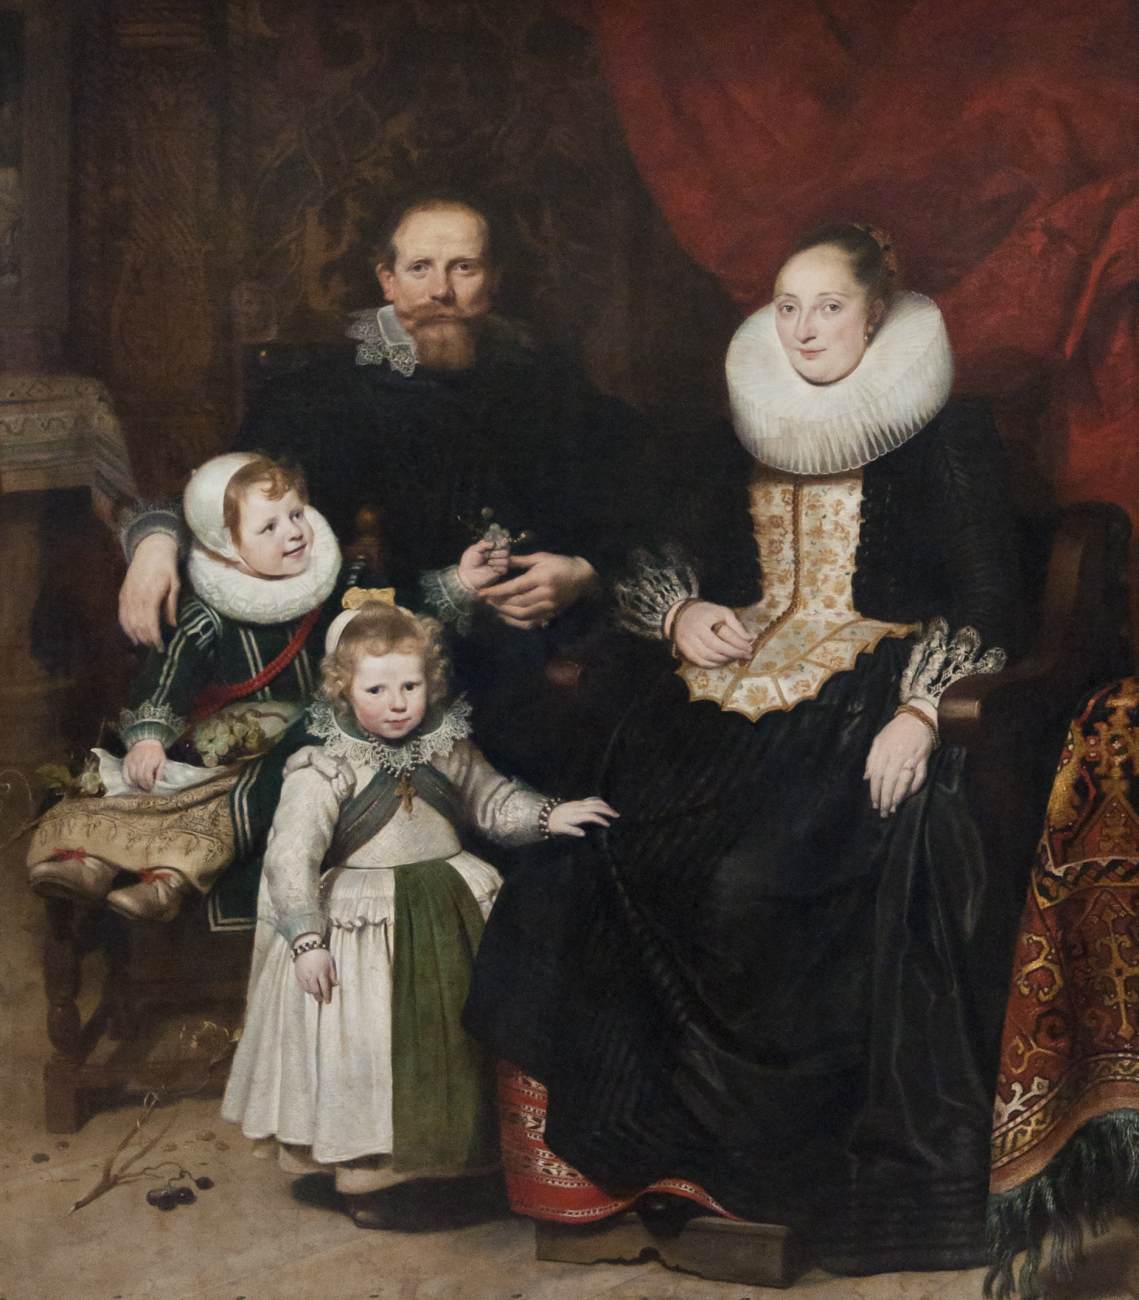 Kunstnerens selvportræt med sin familie